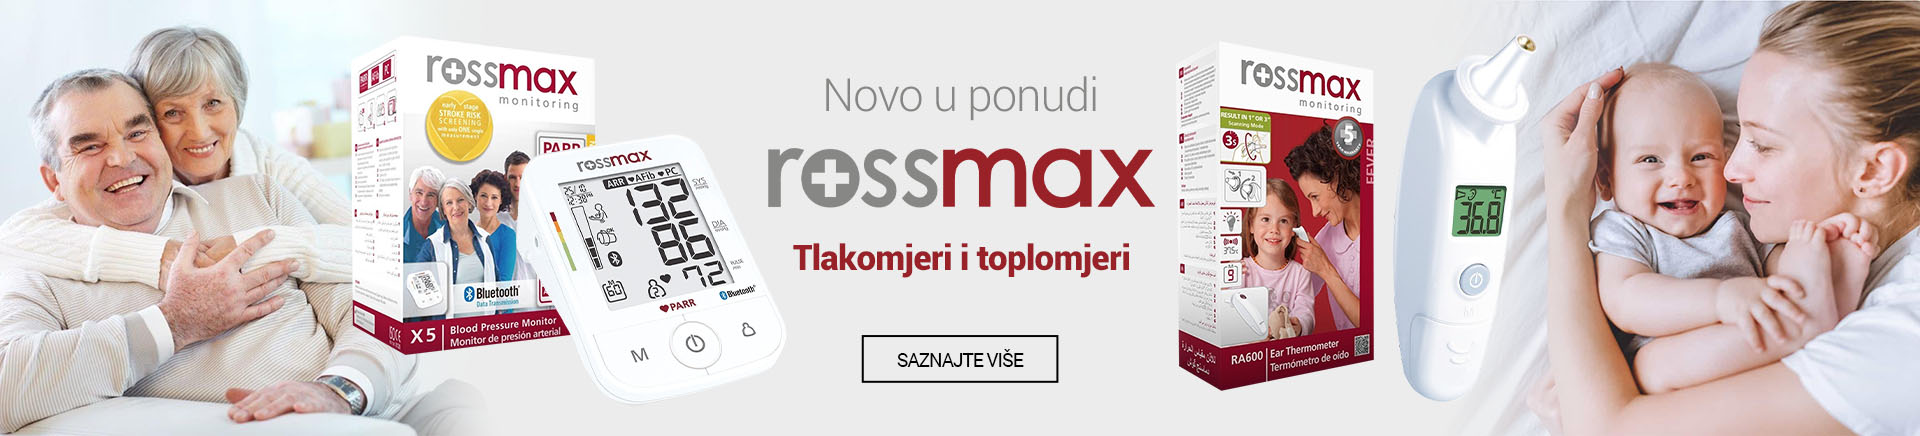 HR Rossmax tlakomjeri i toplomjeri MOBILE za APP 760x872.jpg